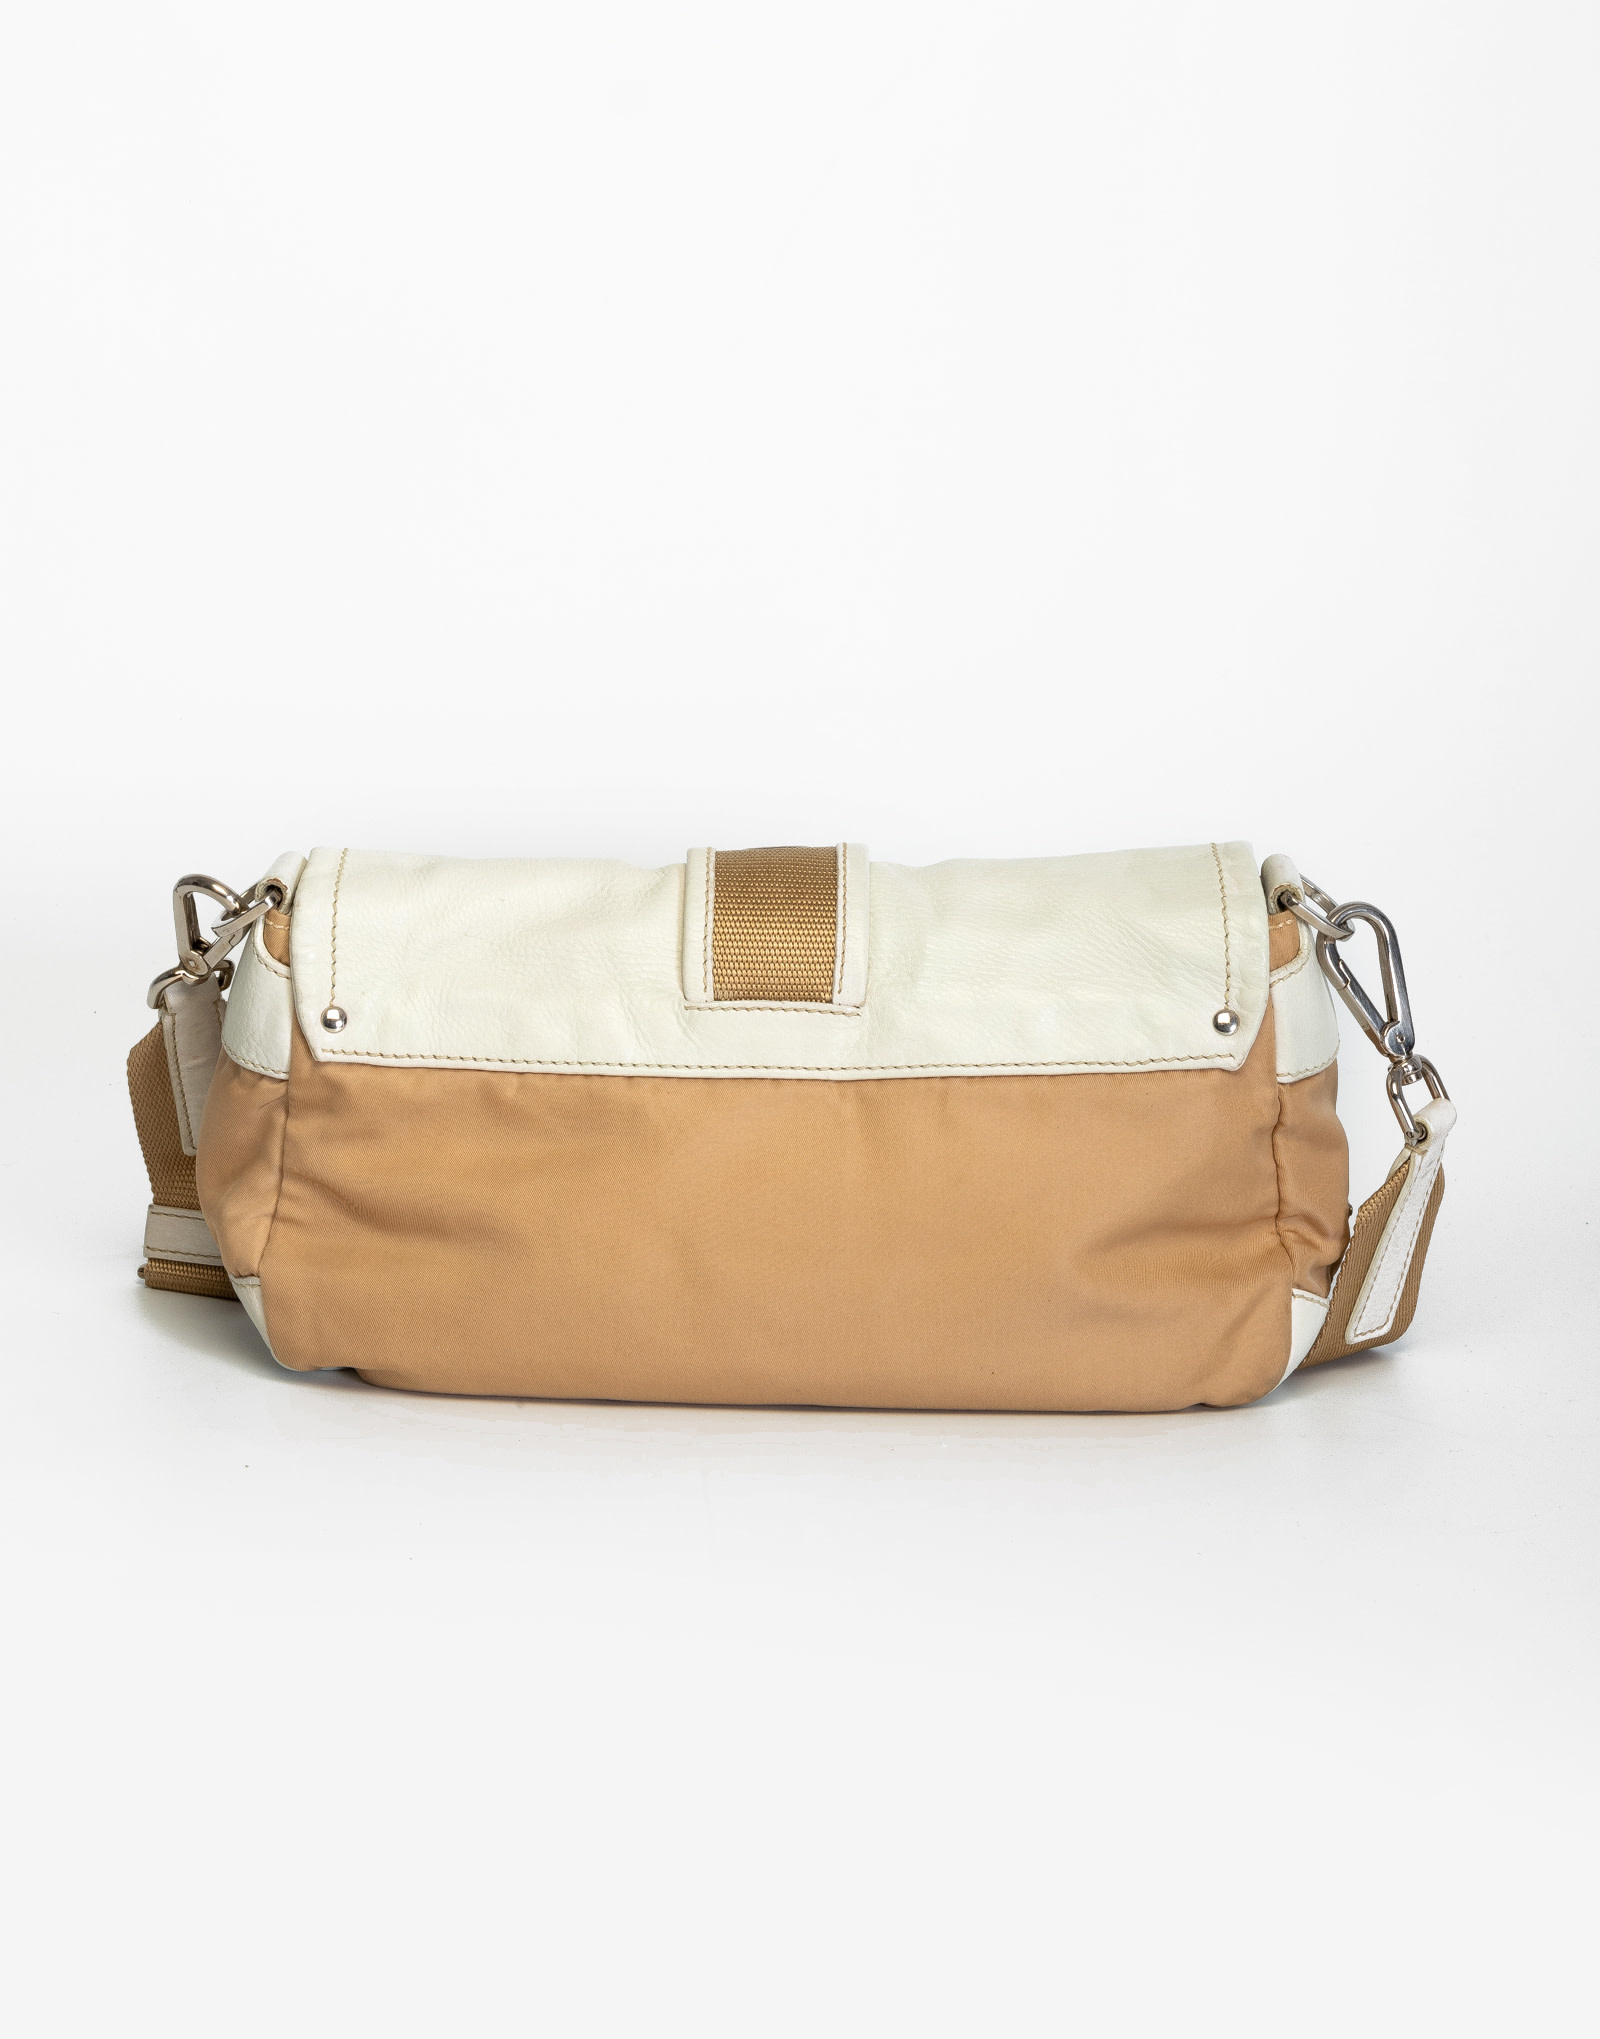 Vintage Prada nylon : r/handbags